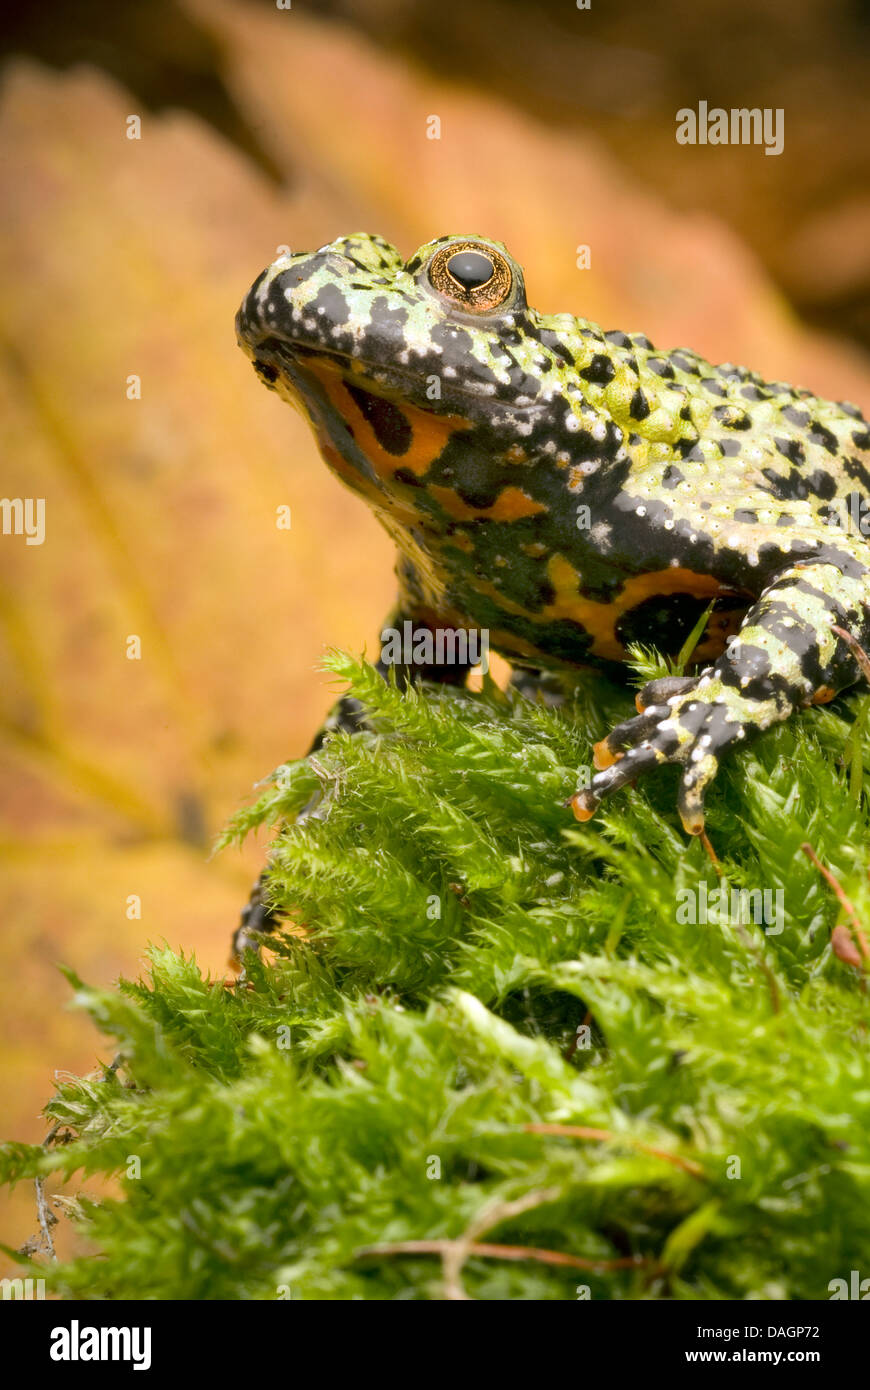 Oriental fire-bellied toad (Bombina orientalis), portrait on moss Stock Photo